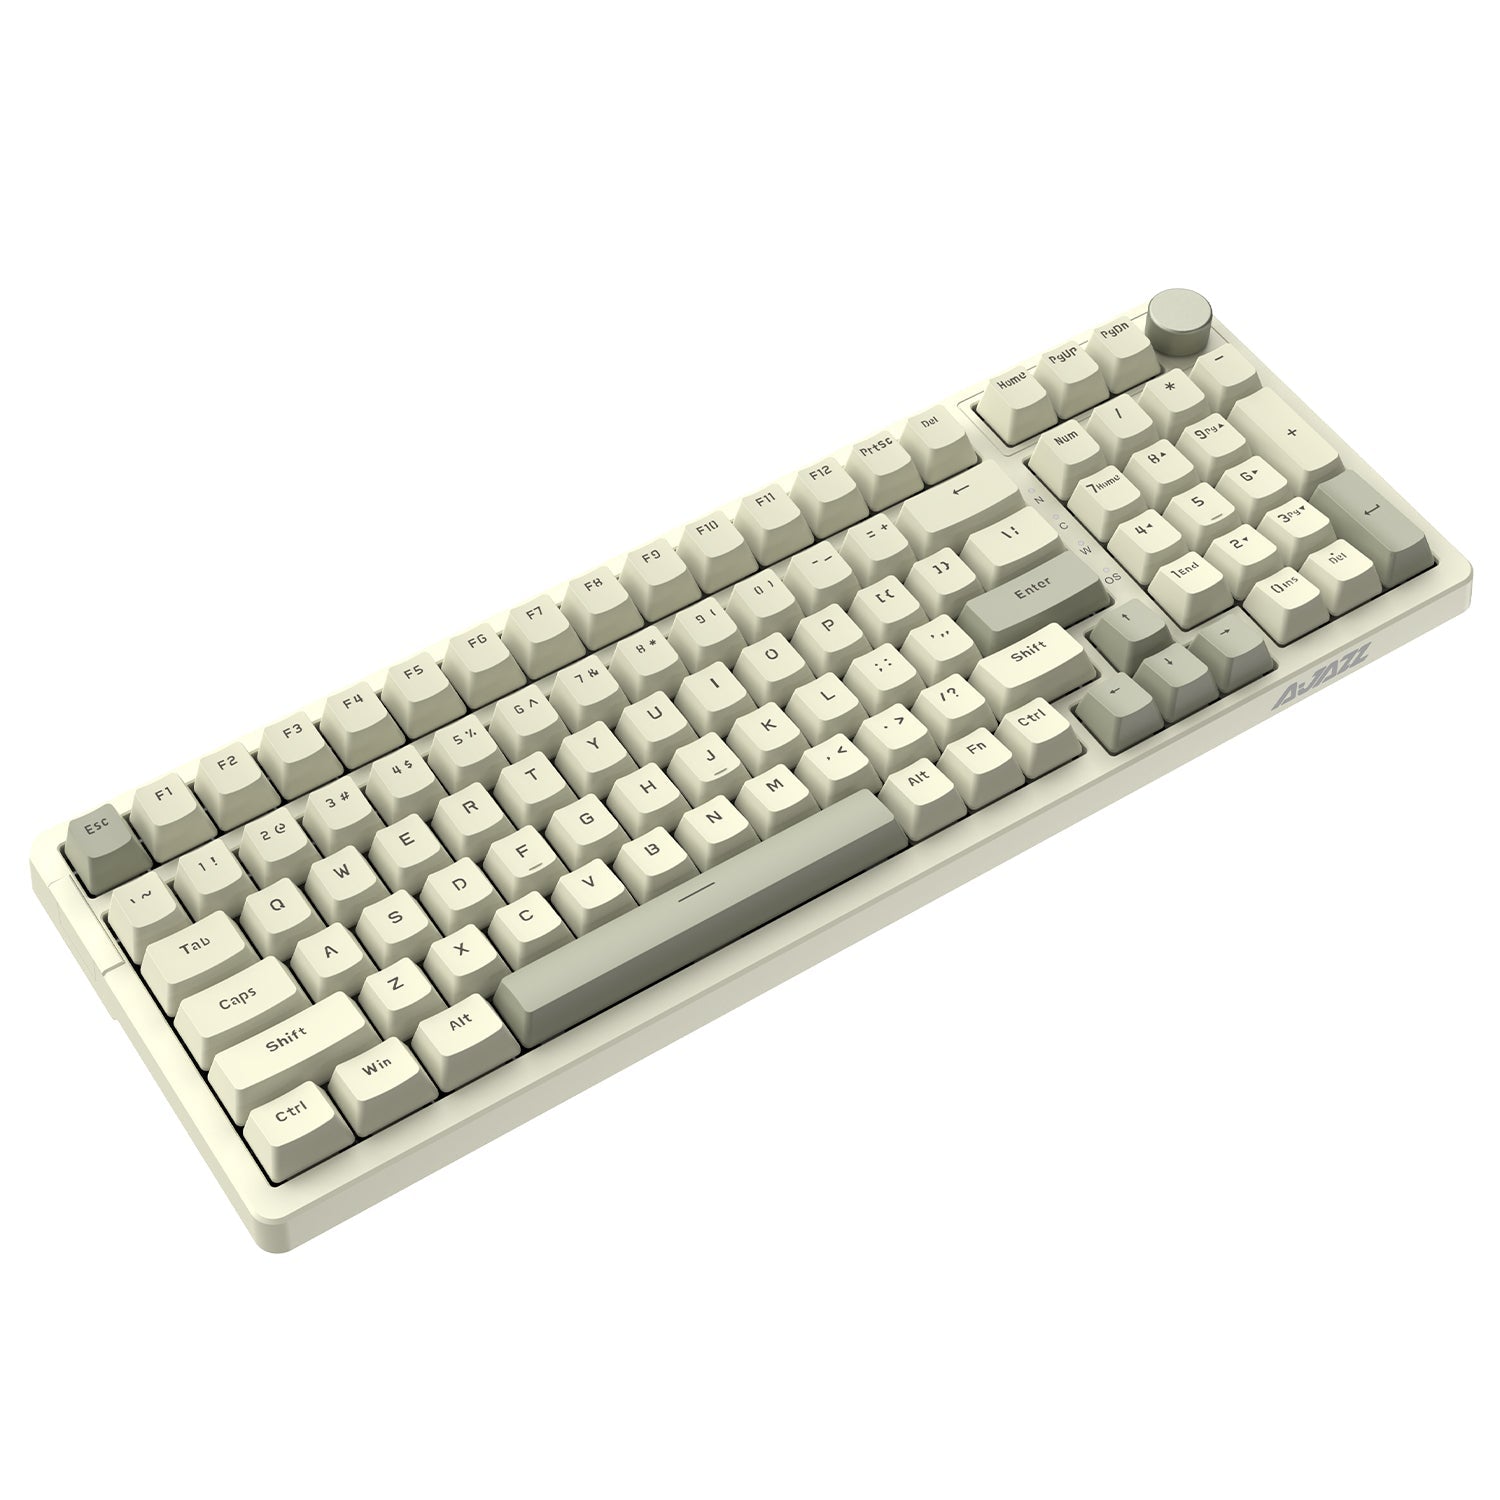 Ajazz AK820 Pro Mechanical Keyboard Review